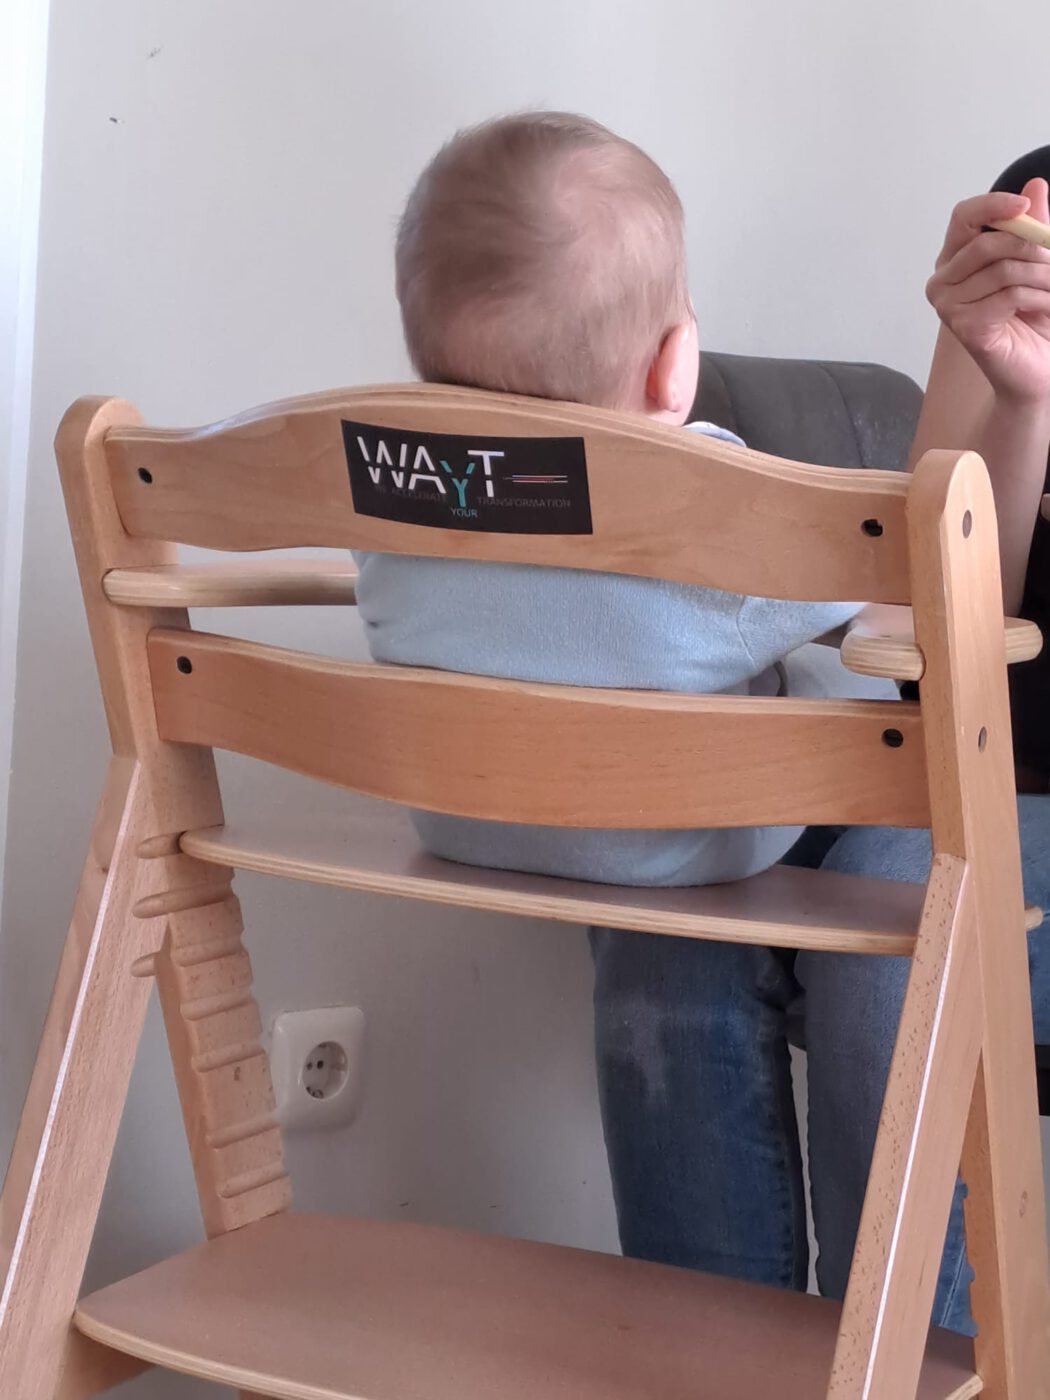 Ein Baby auf einem Babystuhl mit einem WAYT-Aufkleber